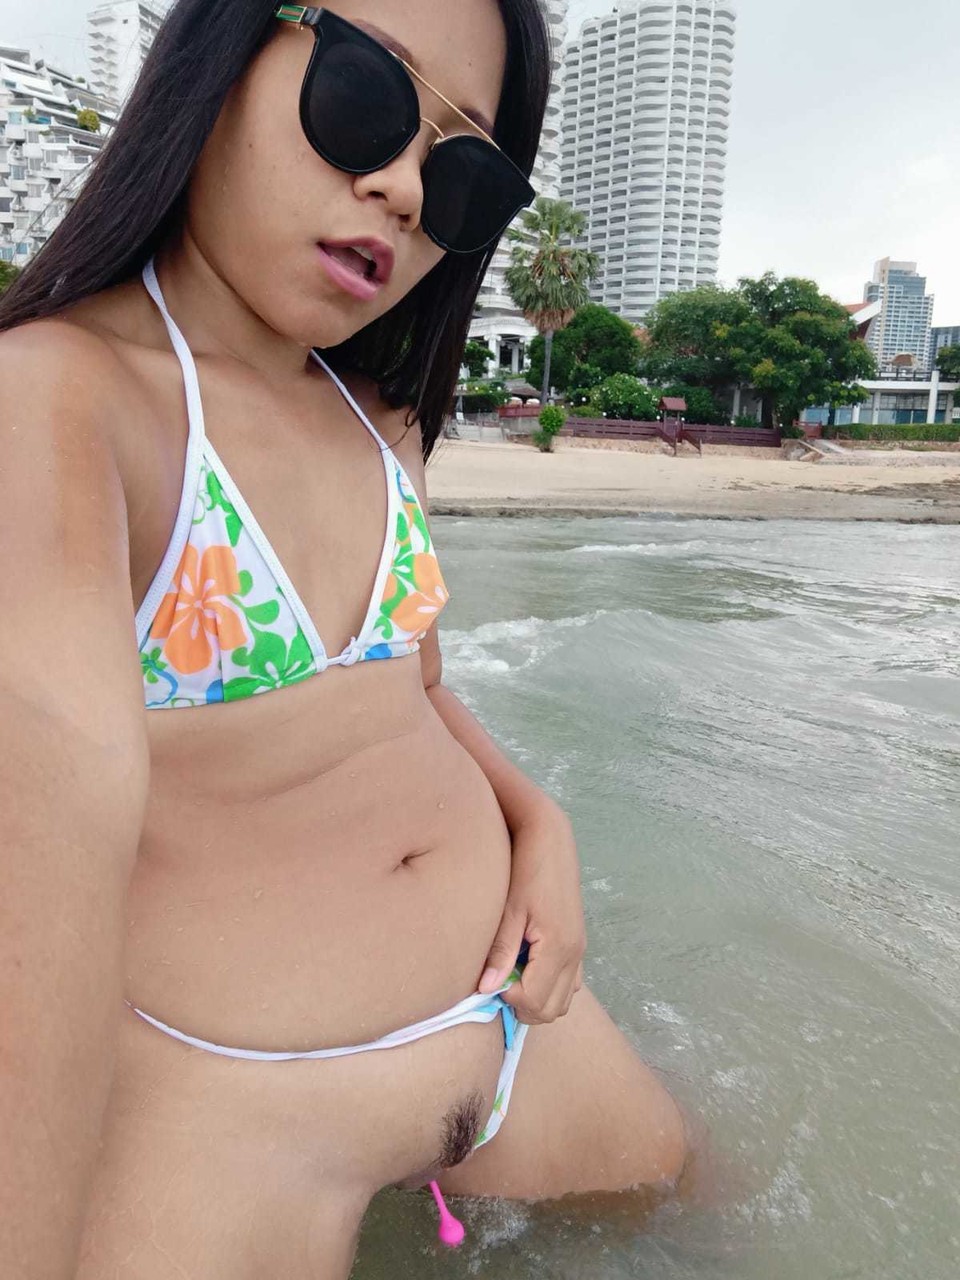 Gorgeous Asian amateur Kiki Asia shows her hot ass in a bikini at the beach foto porno #425545190 | TukTuk Thailand Pics, Kiki Asia, Thai, porno móvil